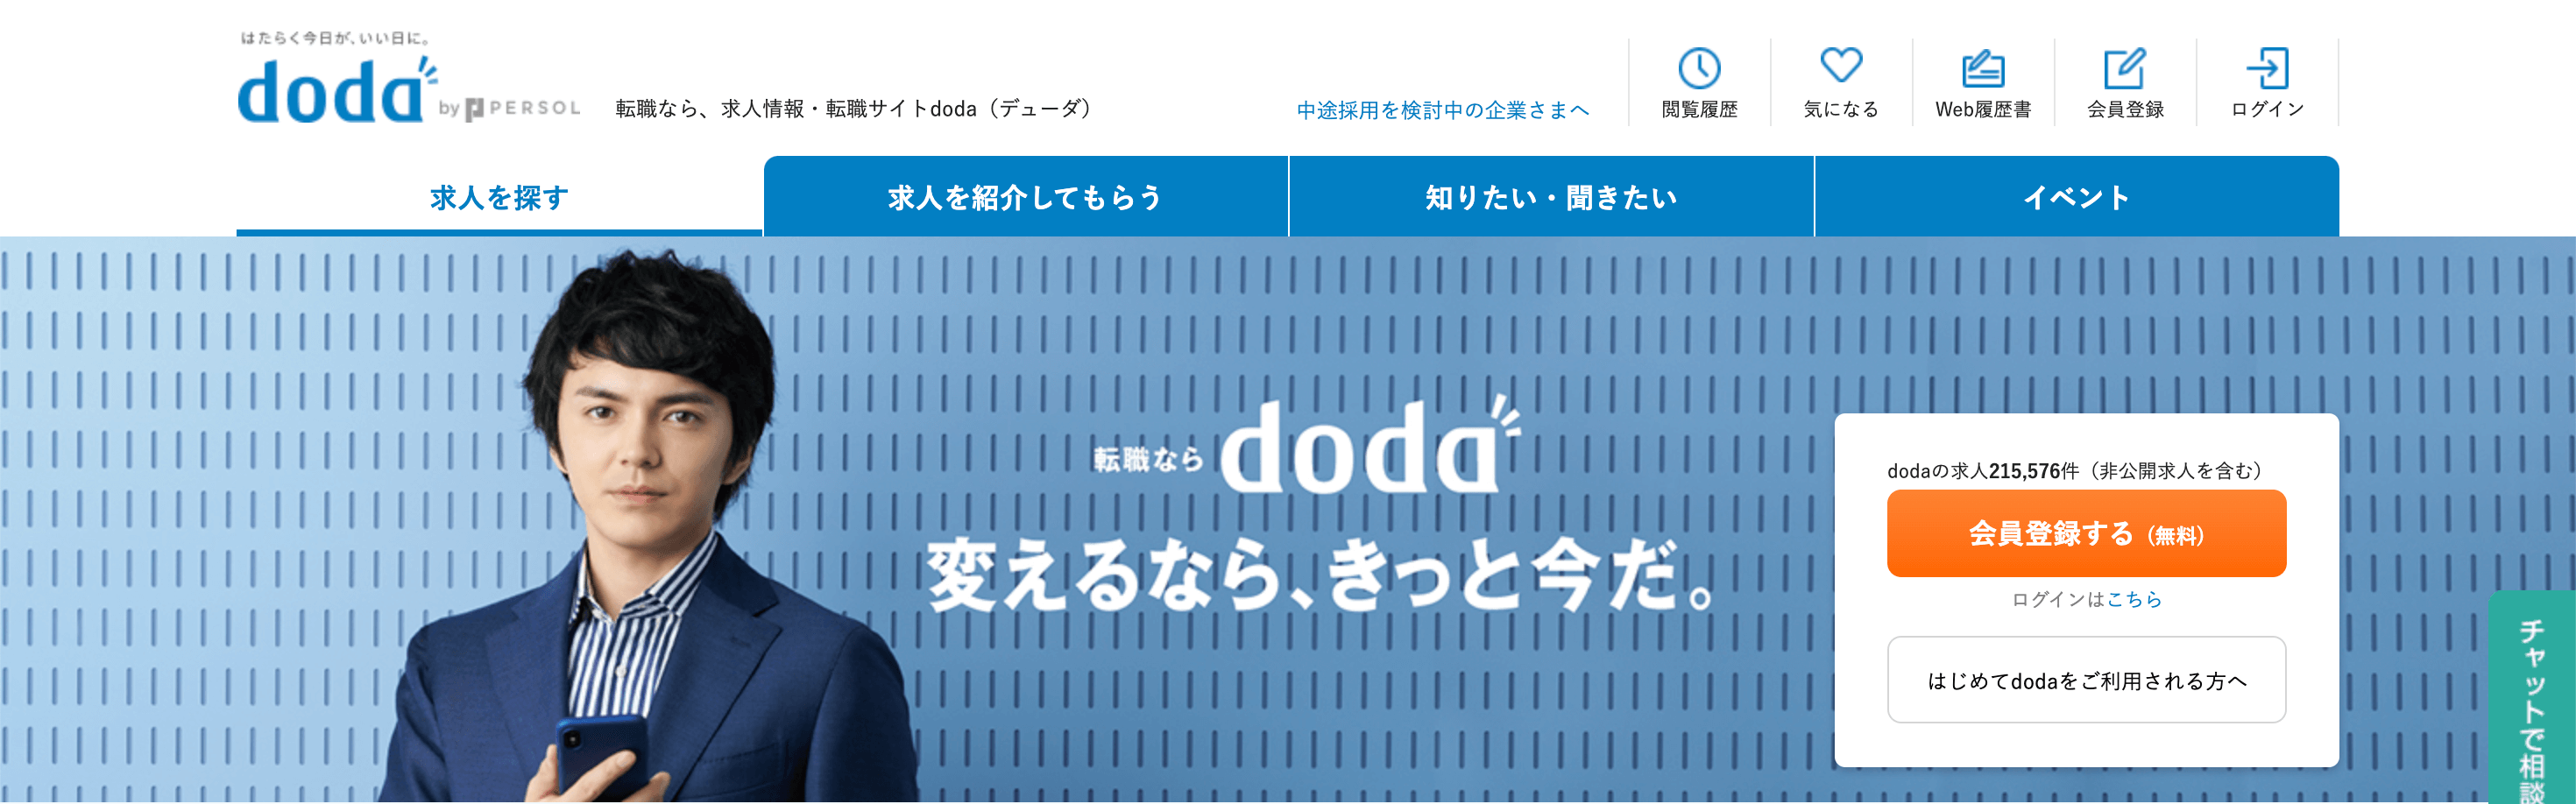 医師転職サイト_doda